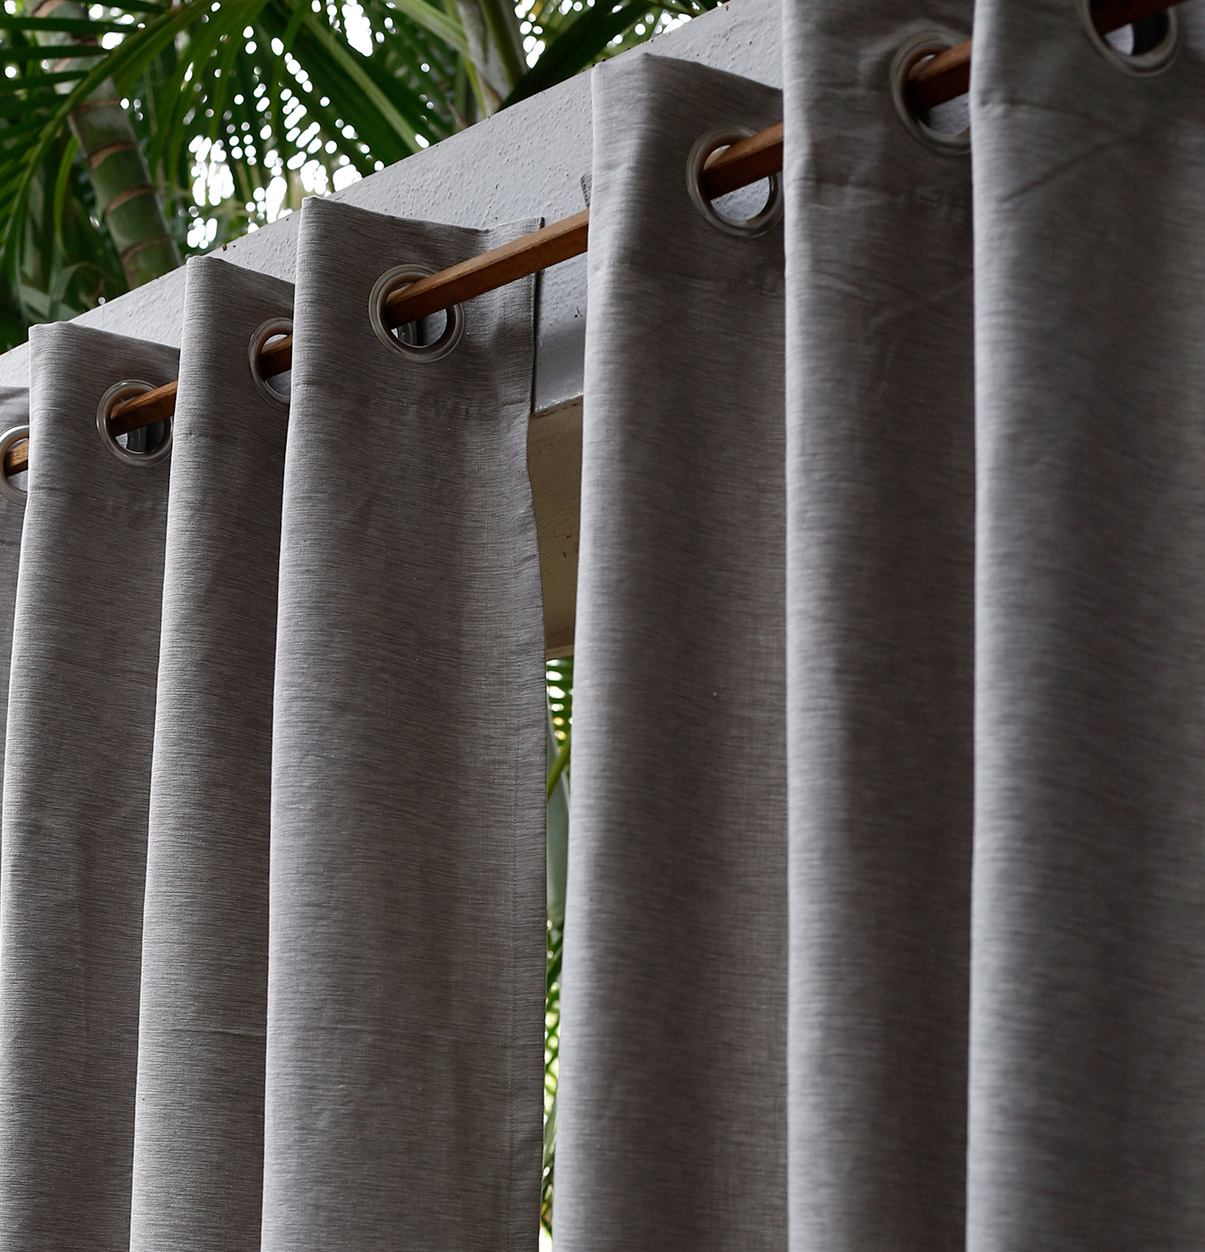 Customizable Curtain, Textura Cotton – Tan Grey